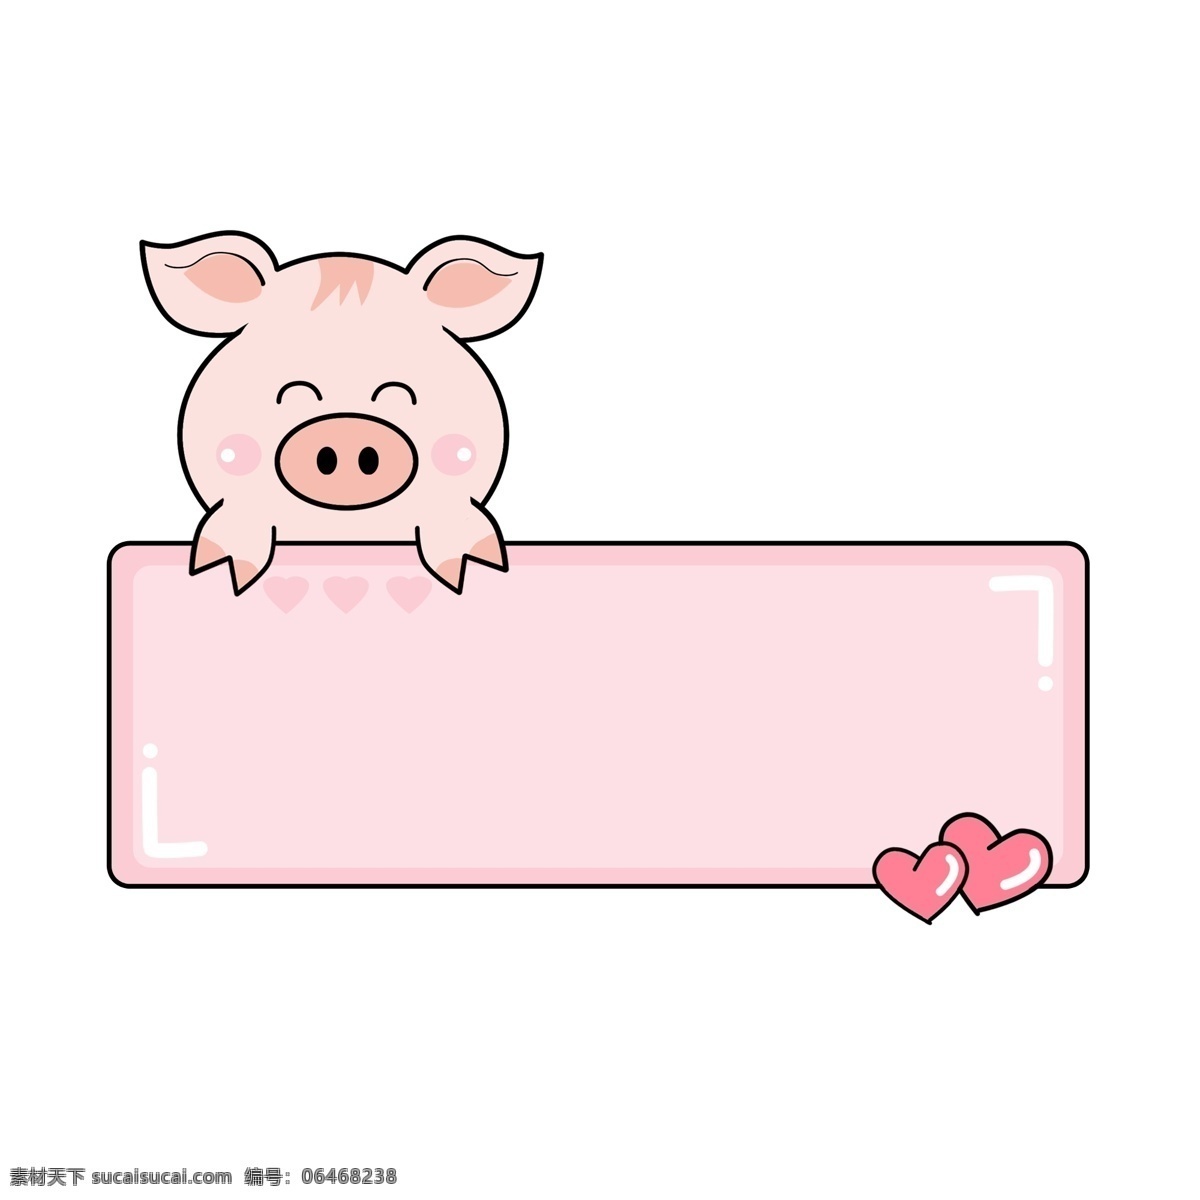 手绘 粉色 可爱 小 猪 边框 对话框 手绘边框 粉色边框 卡通可爱 爱心 小猪边框